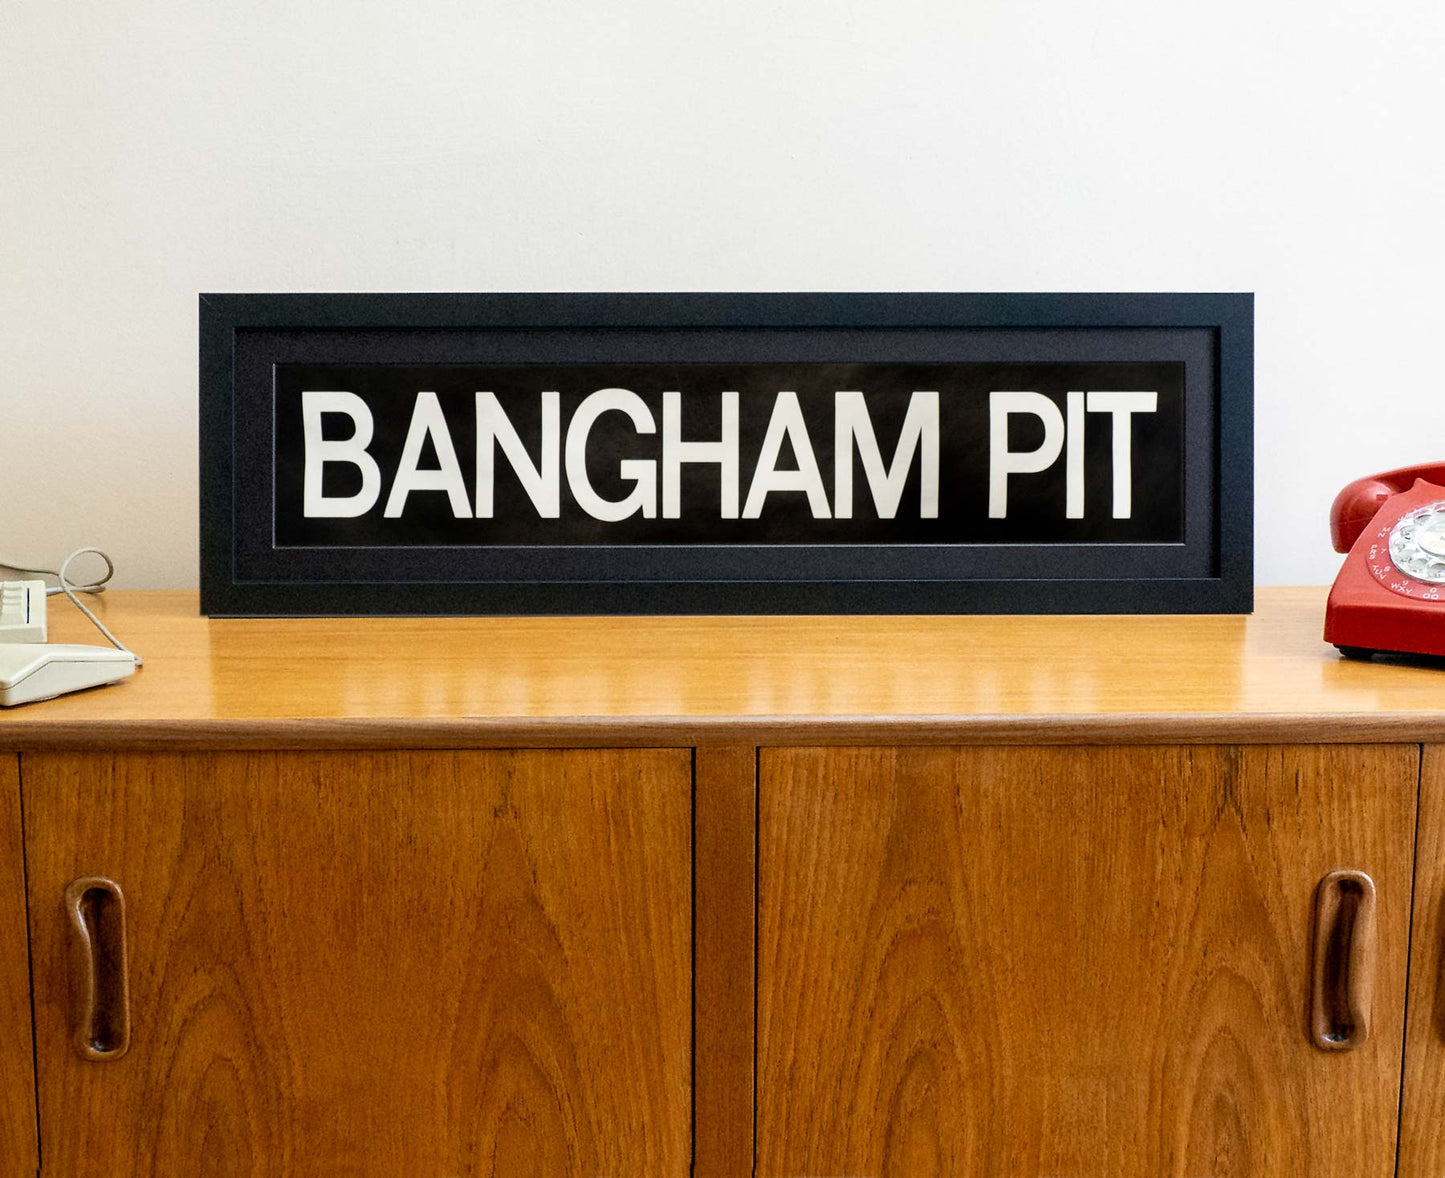 Bangham Pit 1990s framed original bus blind